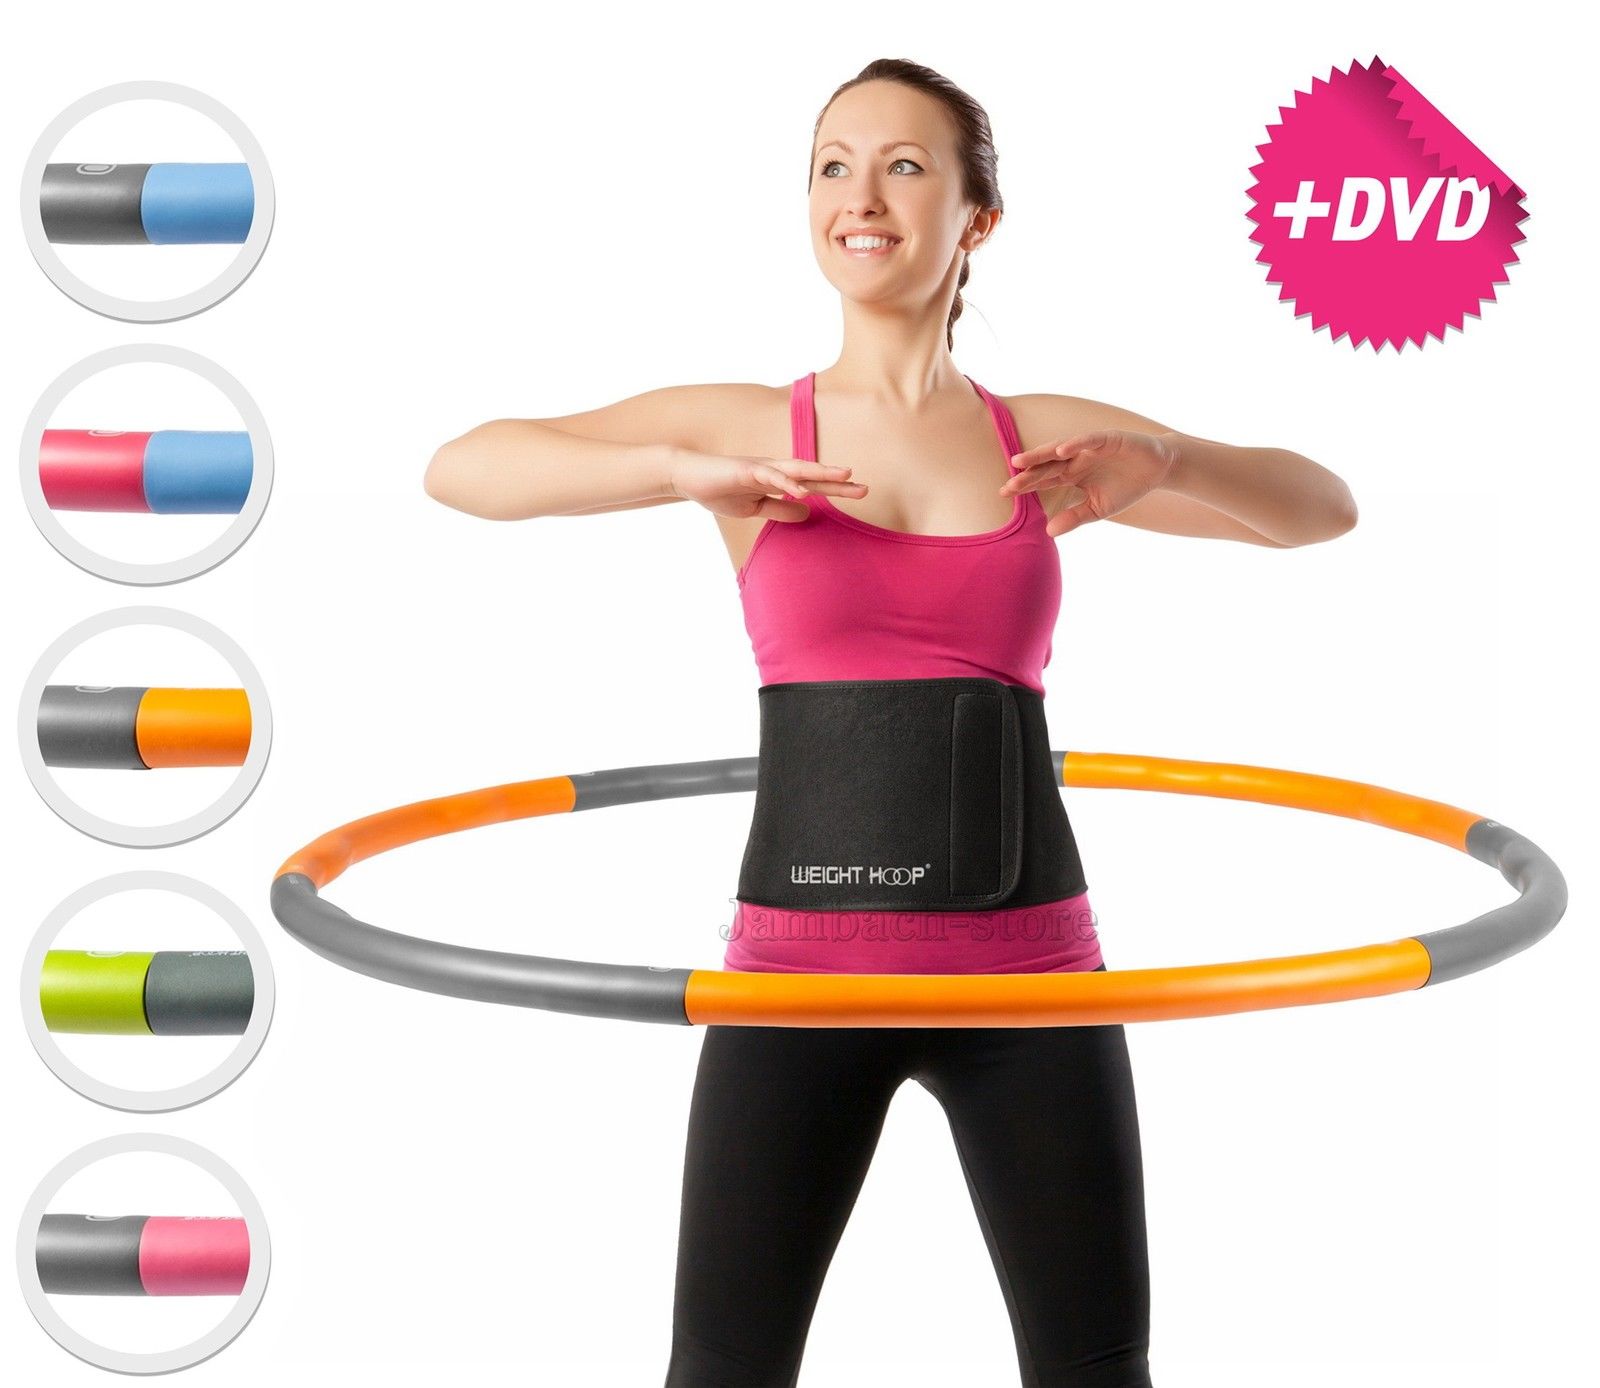 Hula Hoop Reifen 1,2 kg Schaumstoff Sportgerät zum Abnehmen Fitness inkl DVD